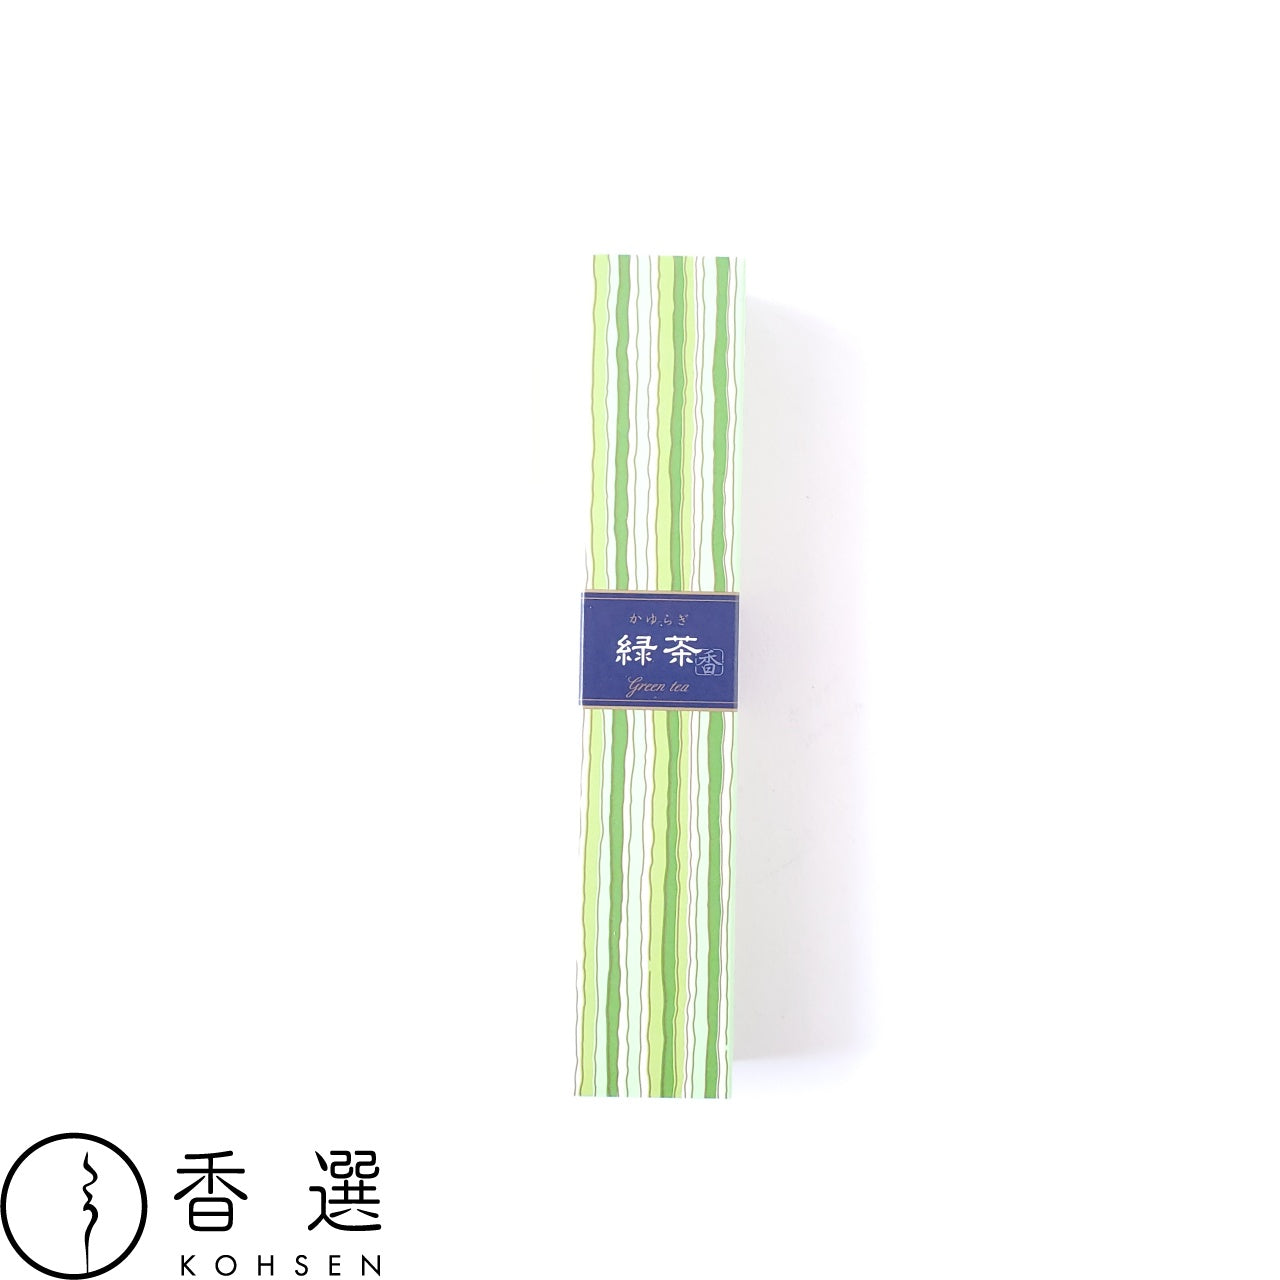 日本香堂 かゆらぎ 緑茶 りょくちゃ green tea お香 お線香 インセンス スティック型 incense 日本製 アロマ メール便送料無料